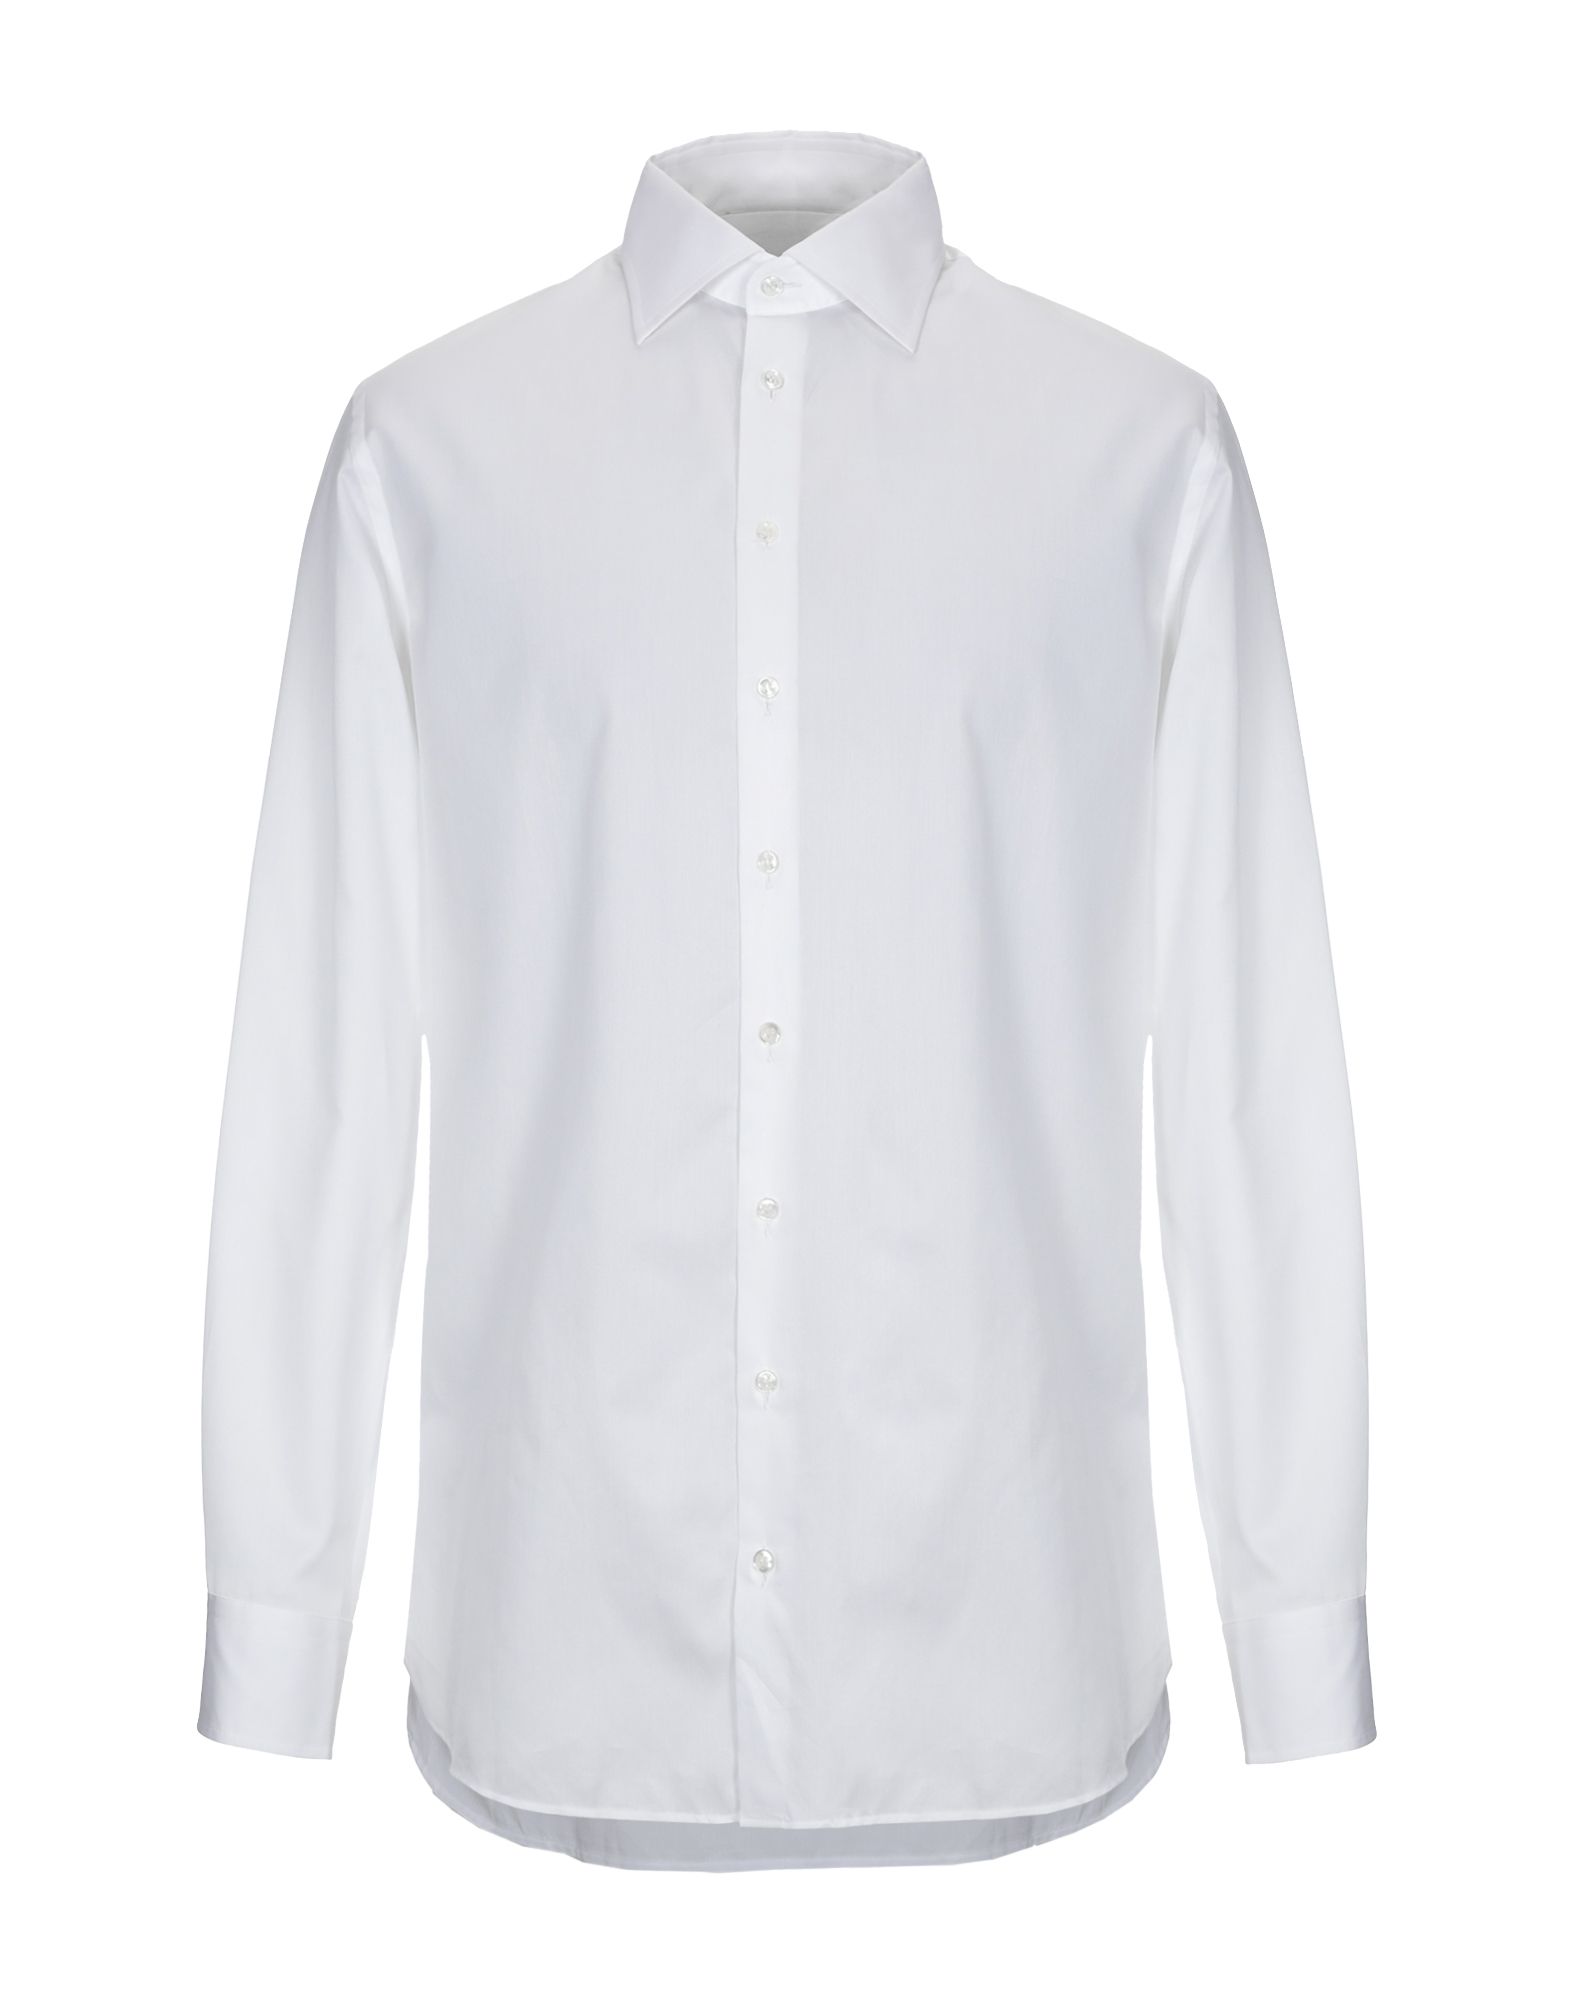 ジョルジオ・アルマーニ(GIORGIO ARMANI) メンズシャツ・ワイシャツ | 通販・人気ランキング - 価格.com